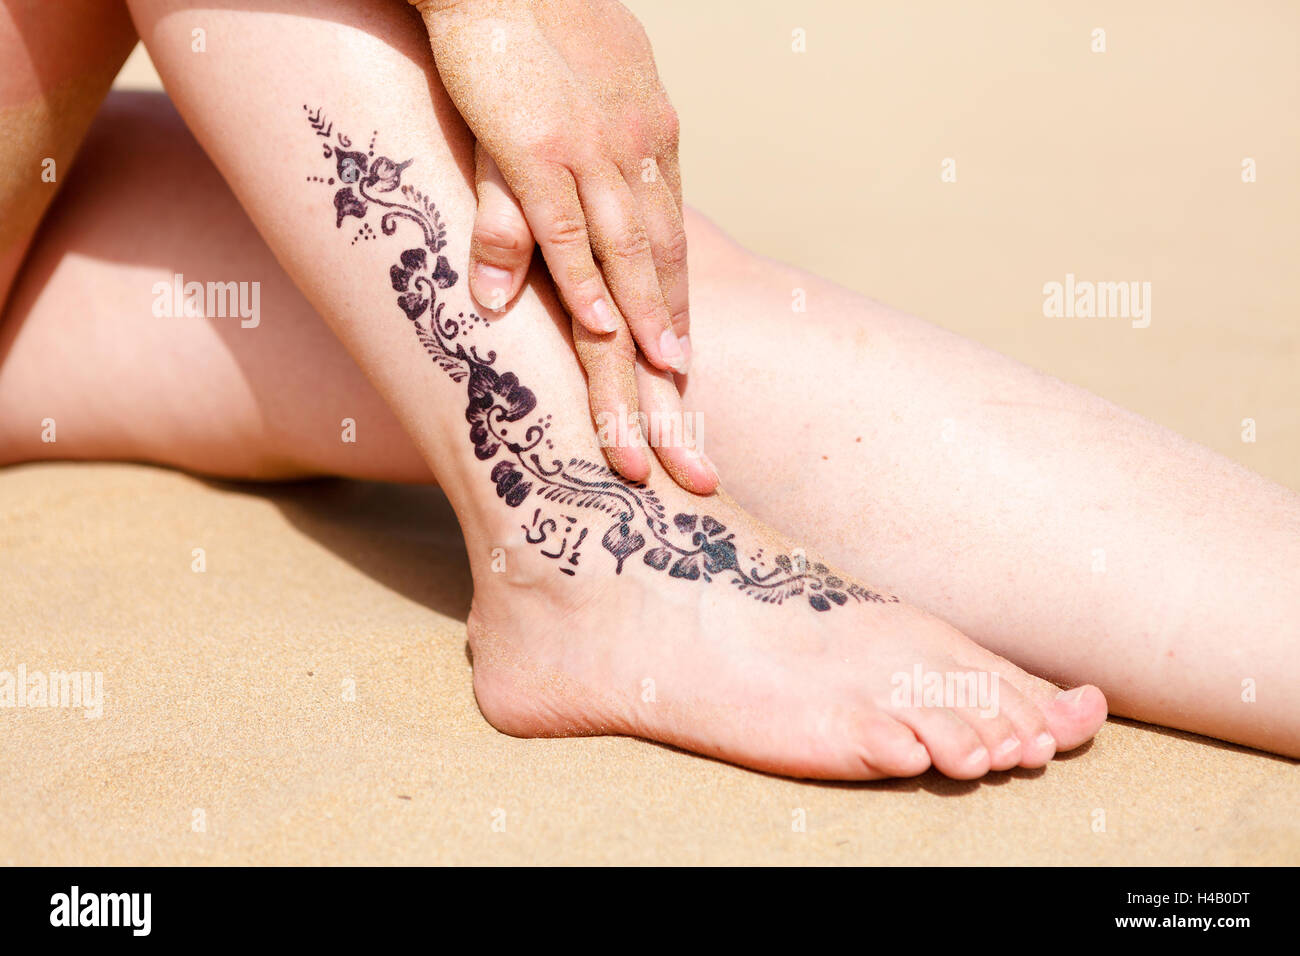 Tatouage au henné sur la jambe de la femme contre une plage de sable Banque D'Images